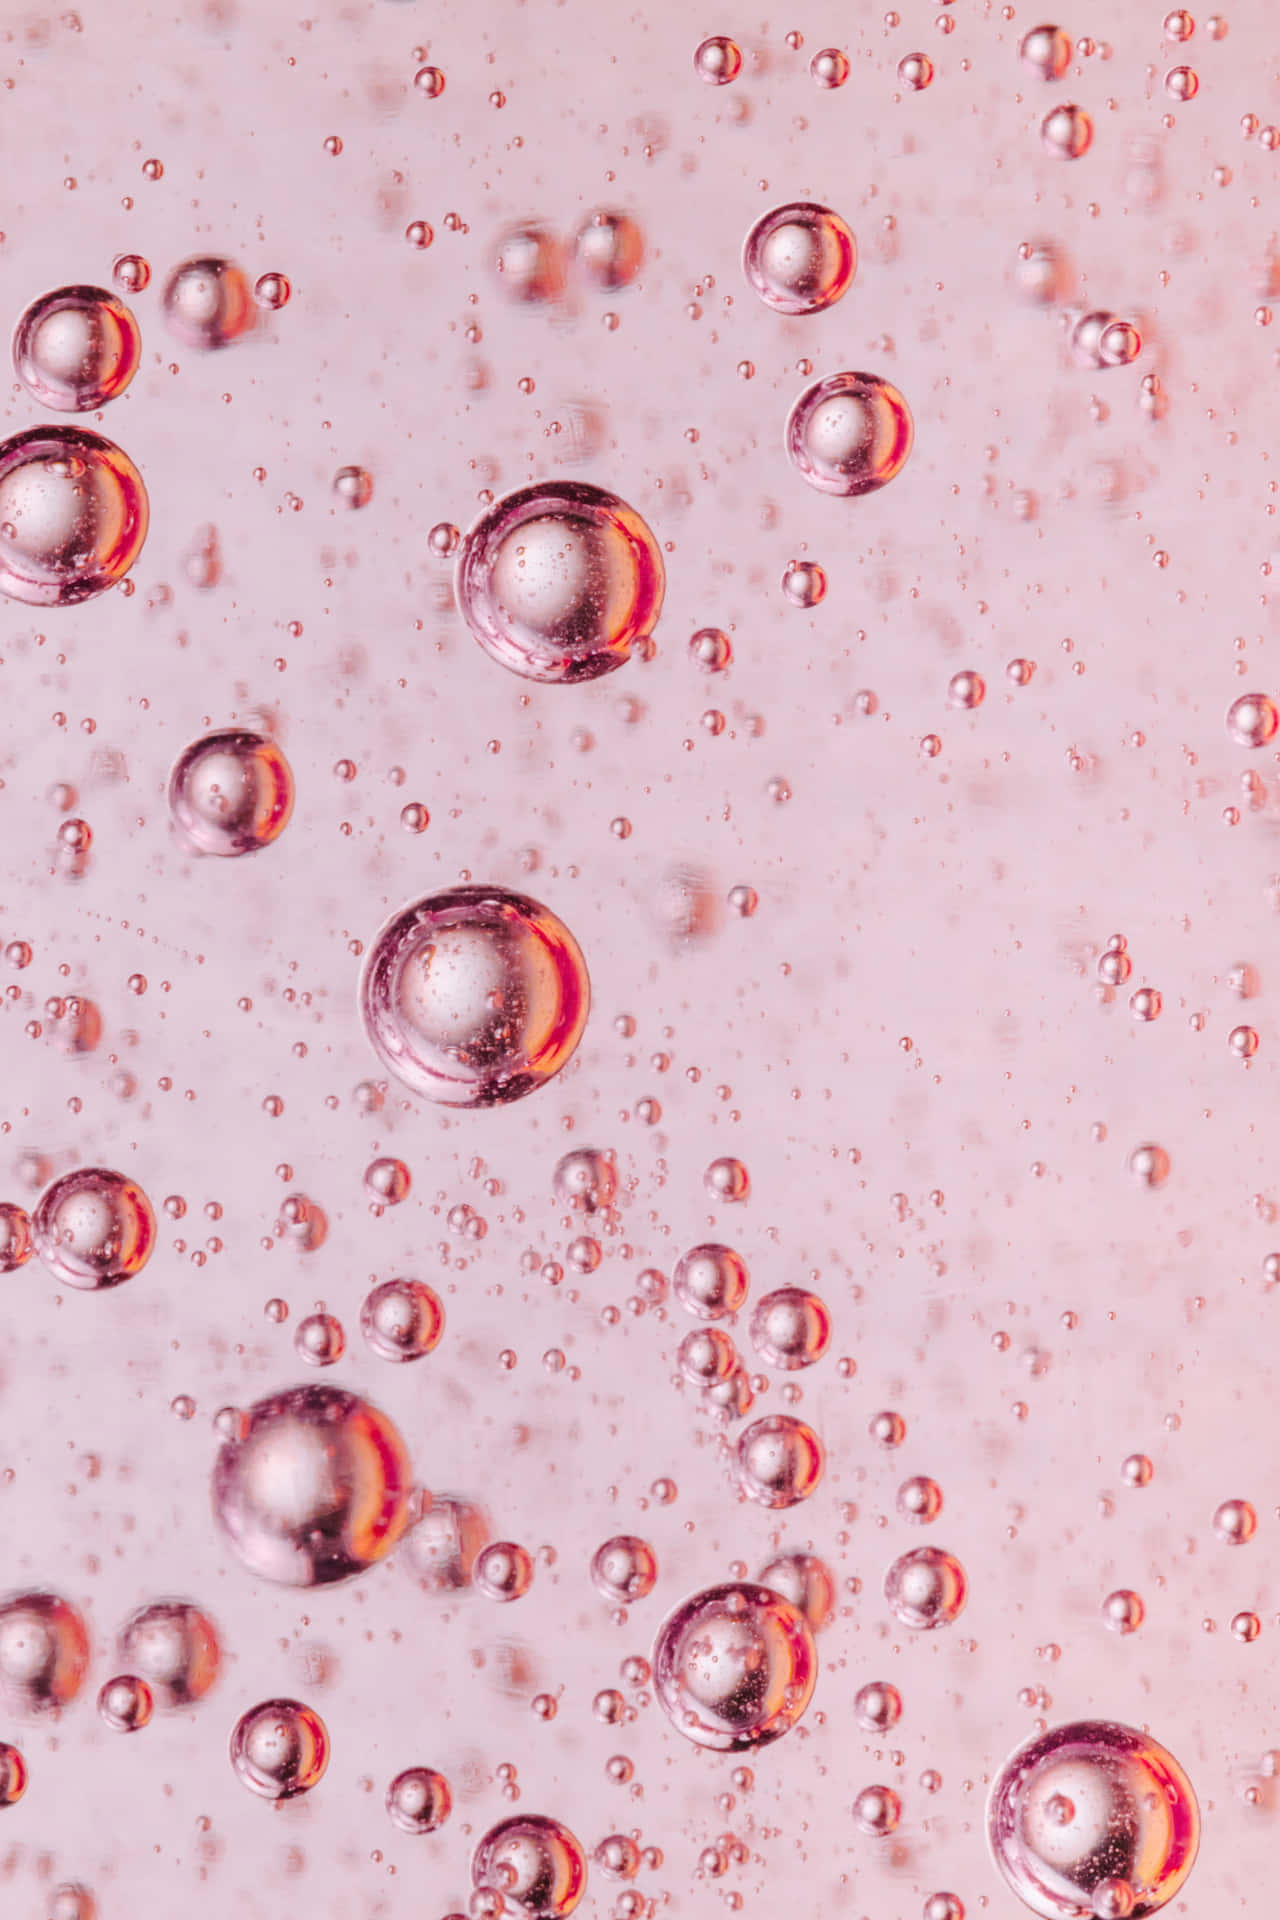 Unprimo Piano Di Bolle In Un Liquido Rosa